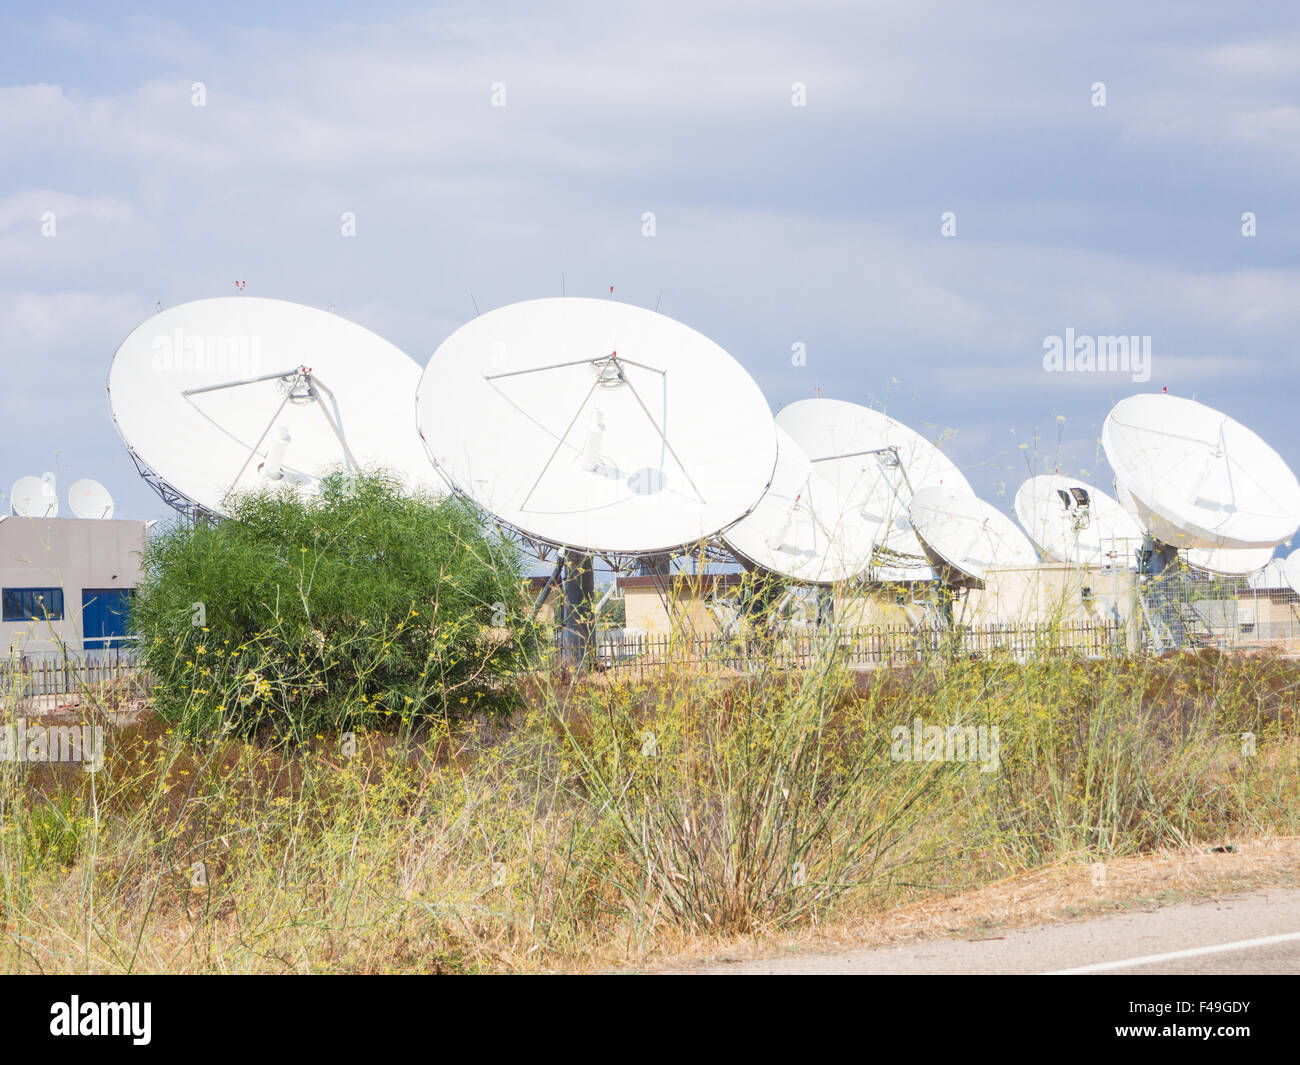 Teleport communications par satellite. Groupe d'antennes dans teleport de Cagliari, Sardaigne, Italie Banque D'Images